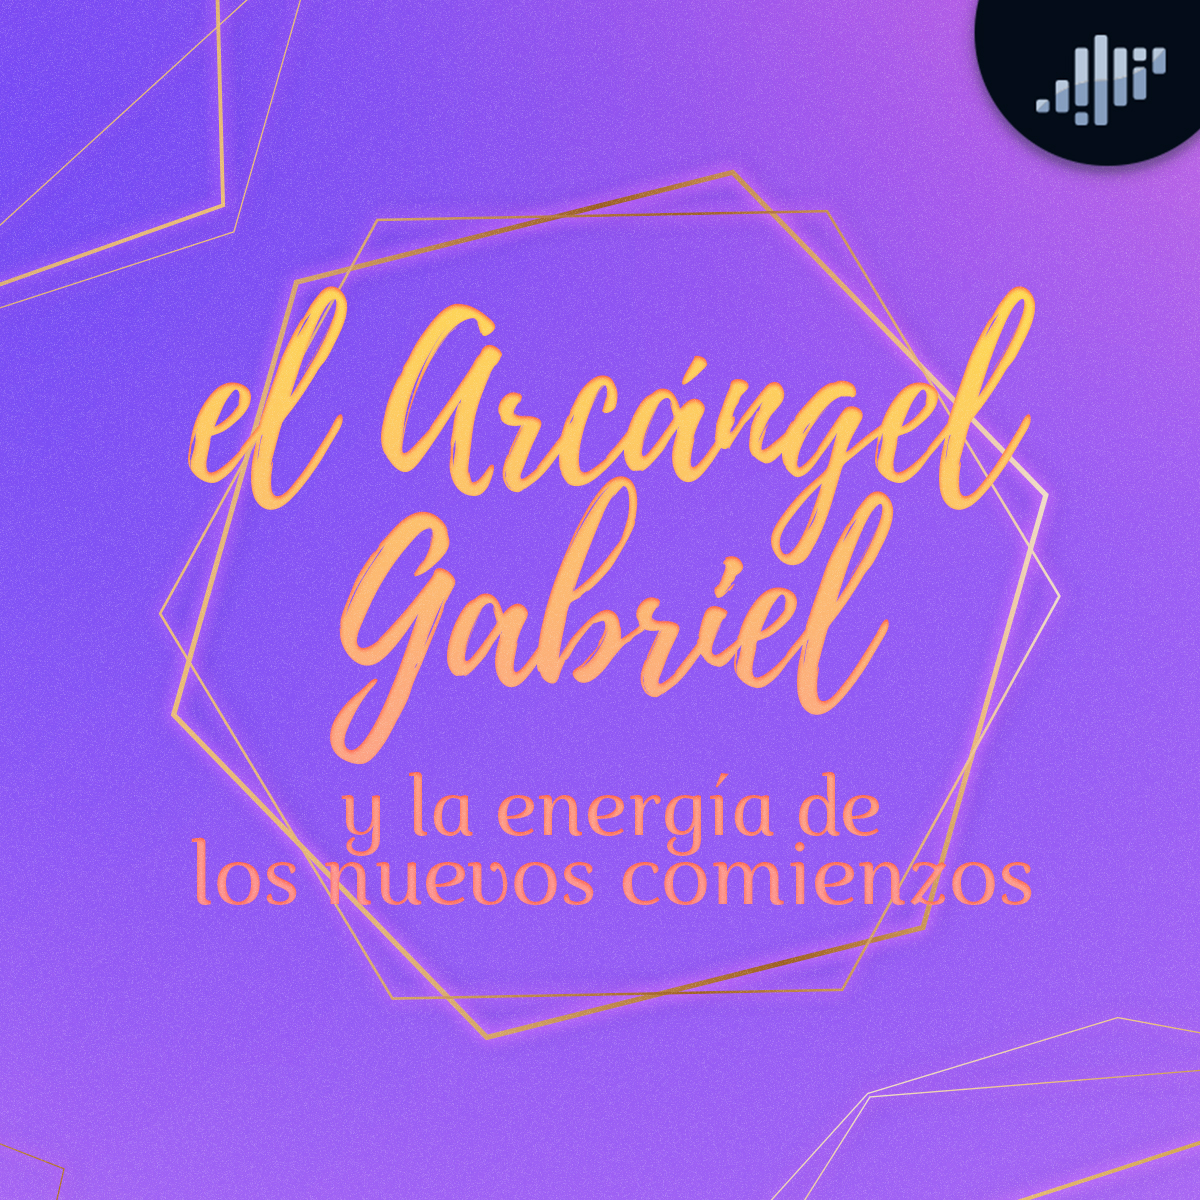 El Arcángel Gabriel y los Nuevos Comienzos | Hablando con los Ángeles